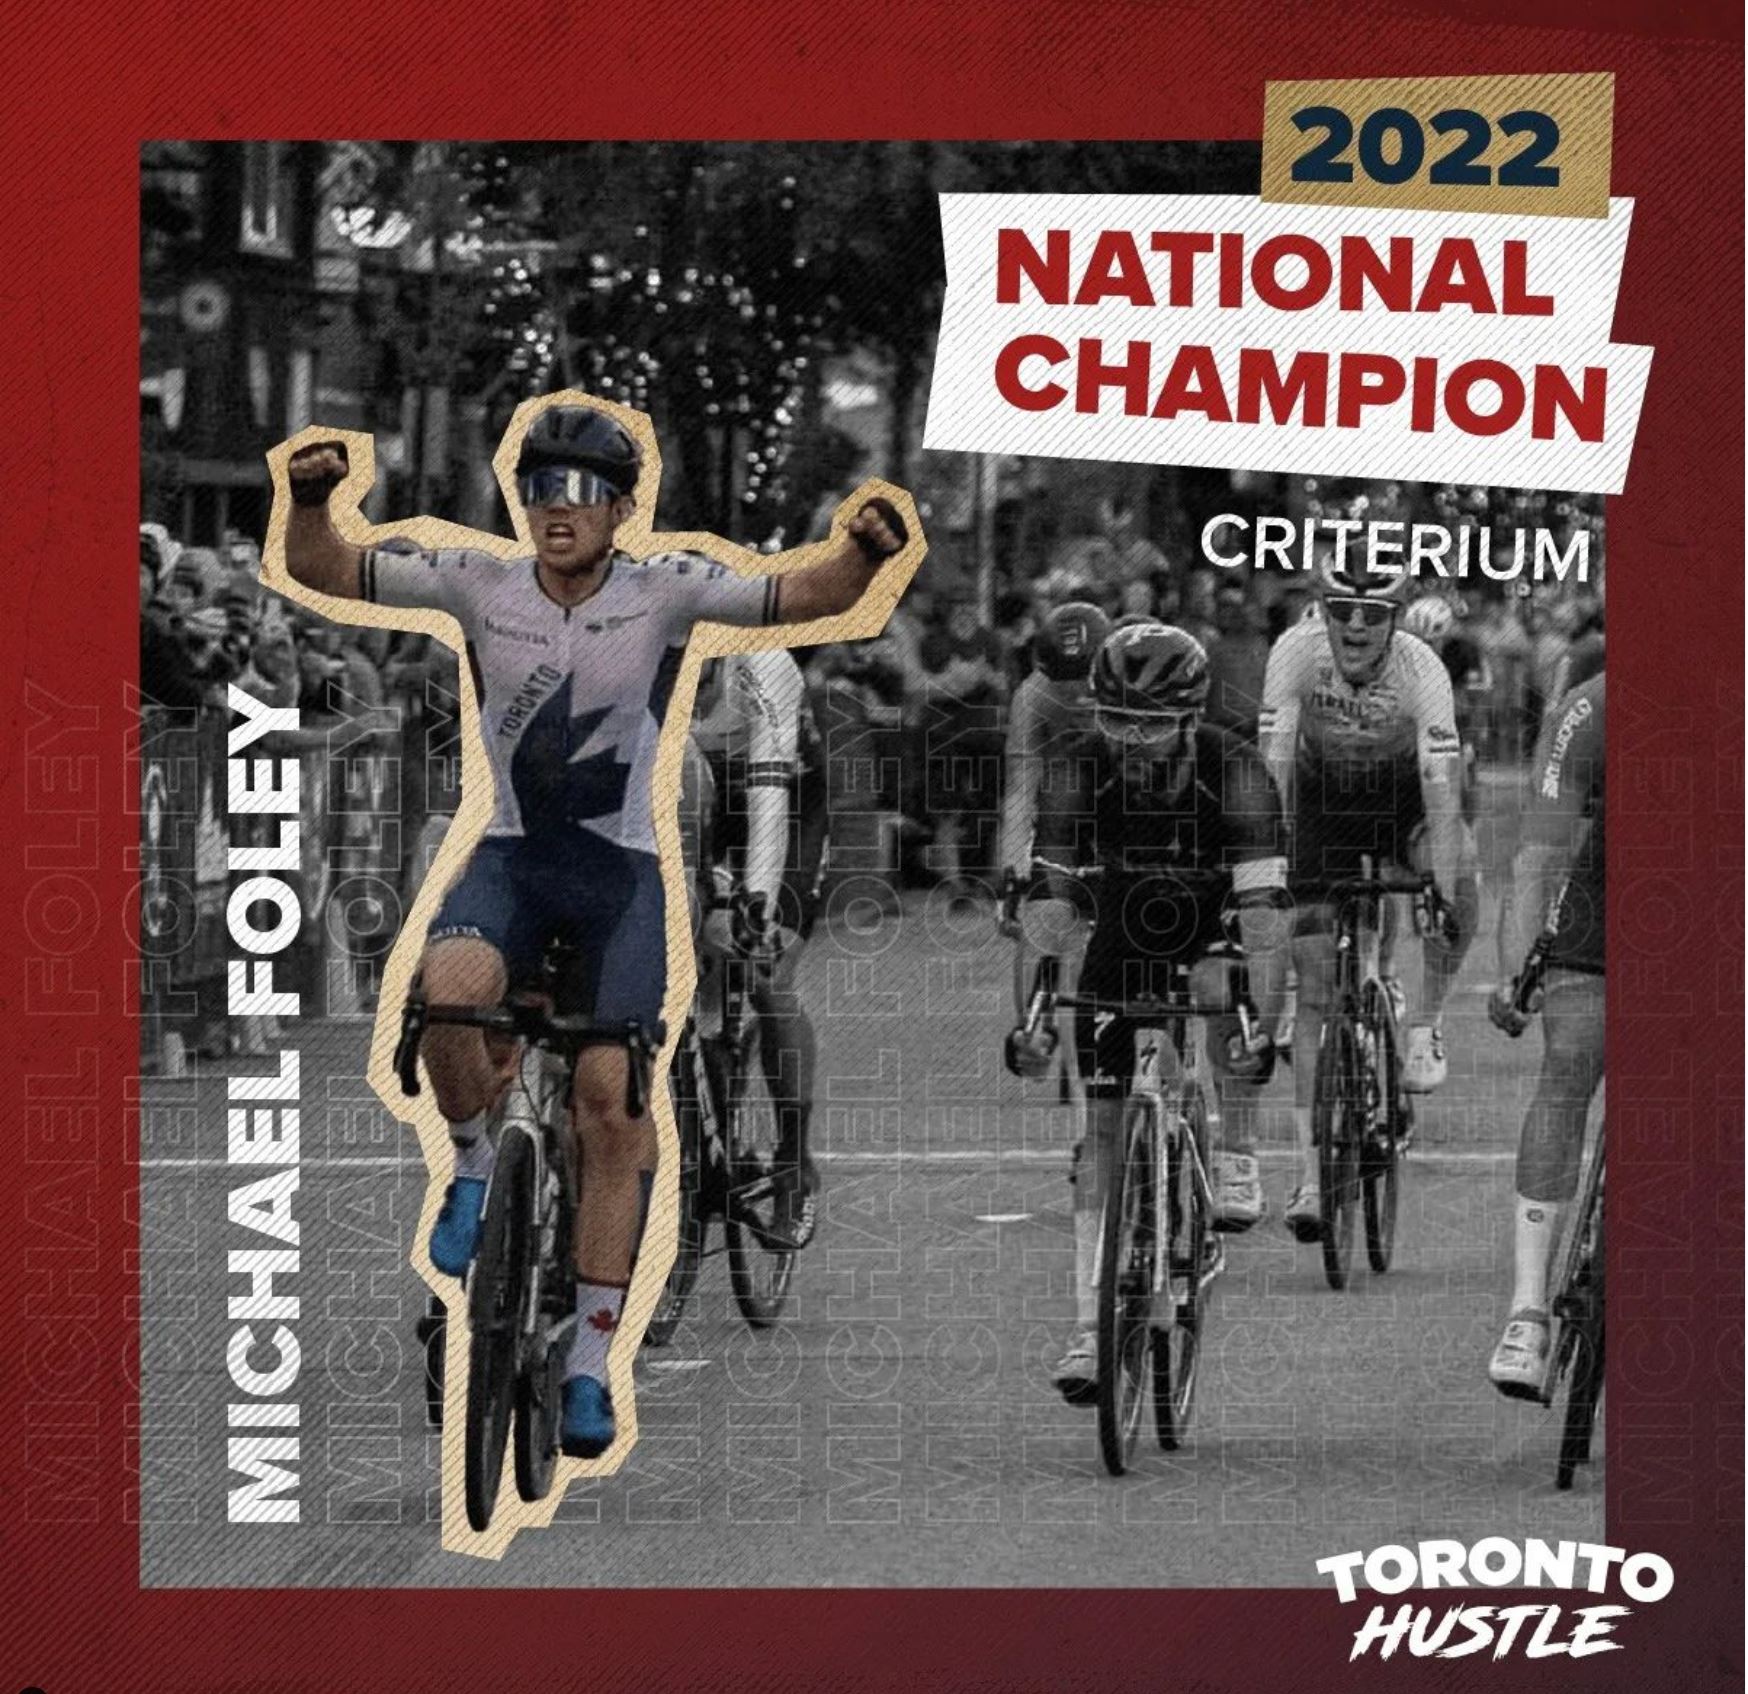 2022 National Criterium Champion